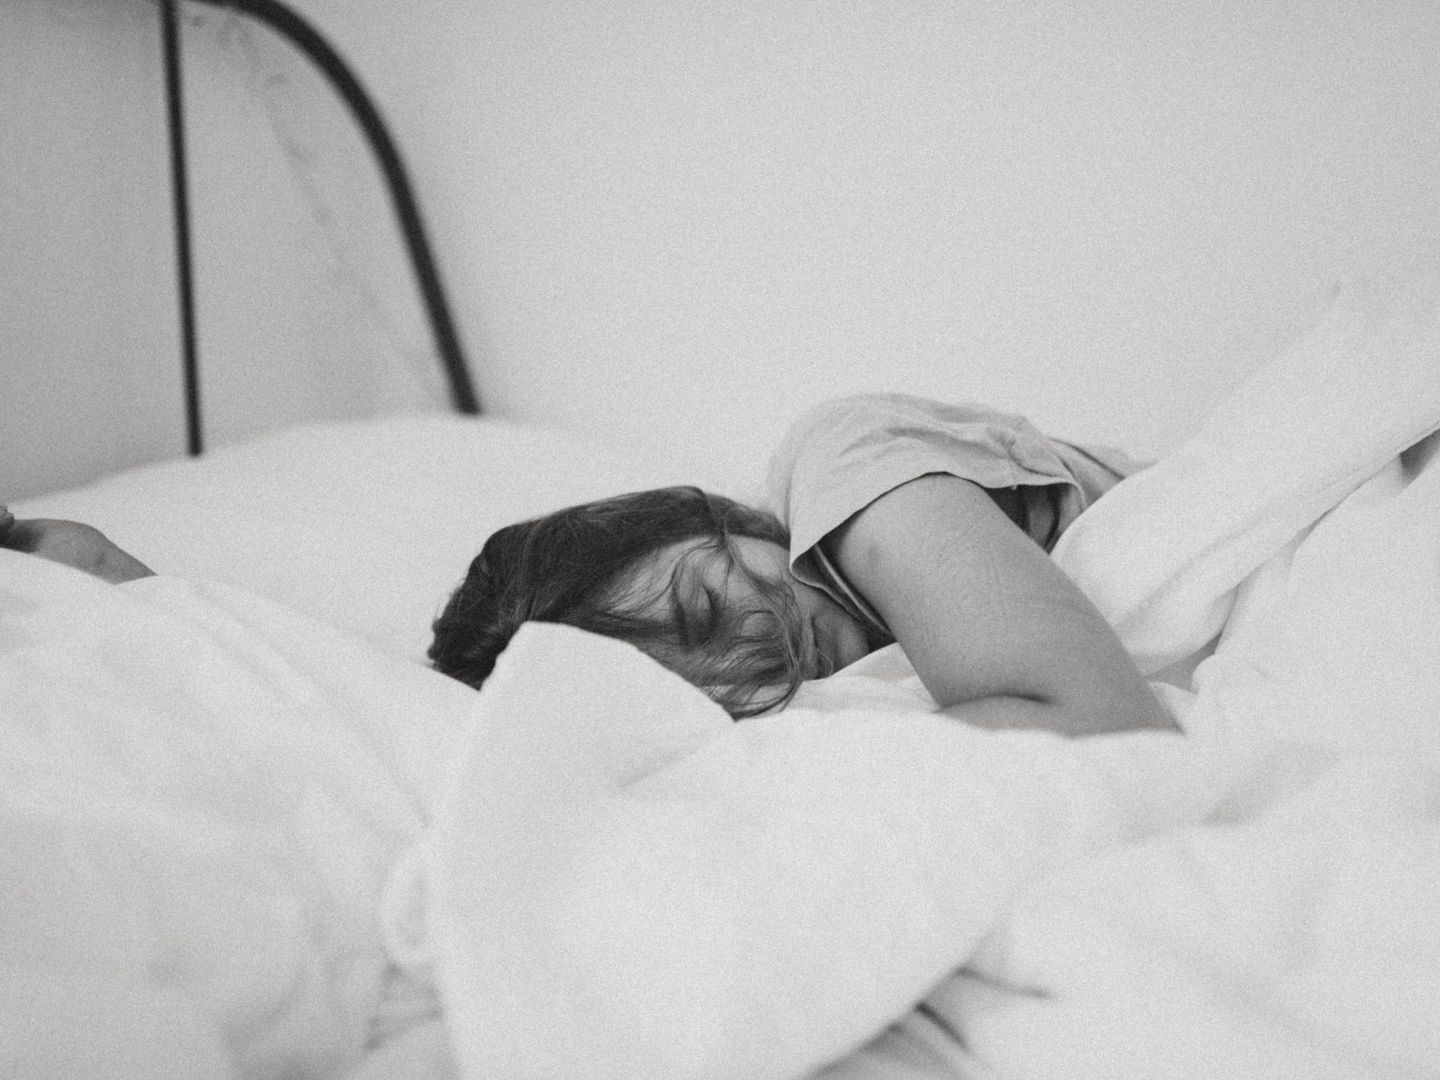 Dormir 8 horas es muy importante para nuestro cuerpo. (Kinga Cichewicz on Unsplash)